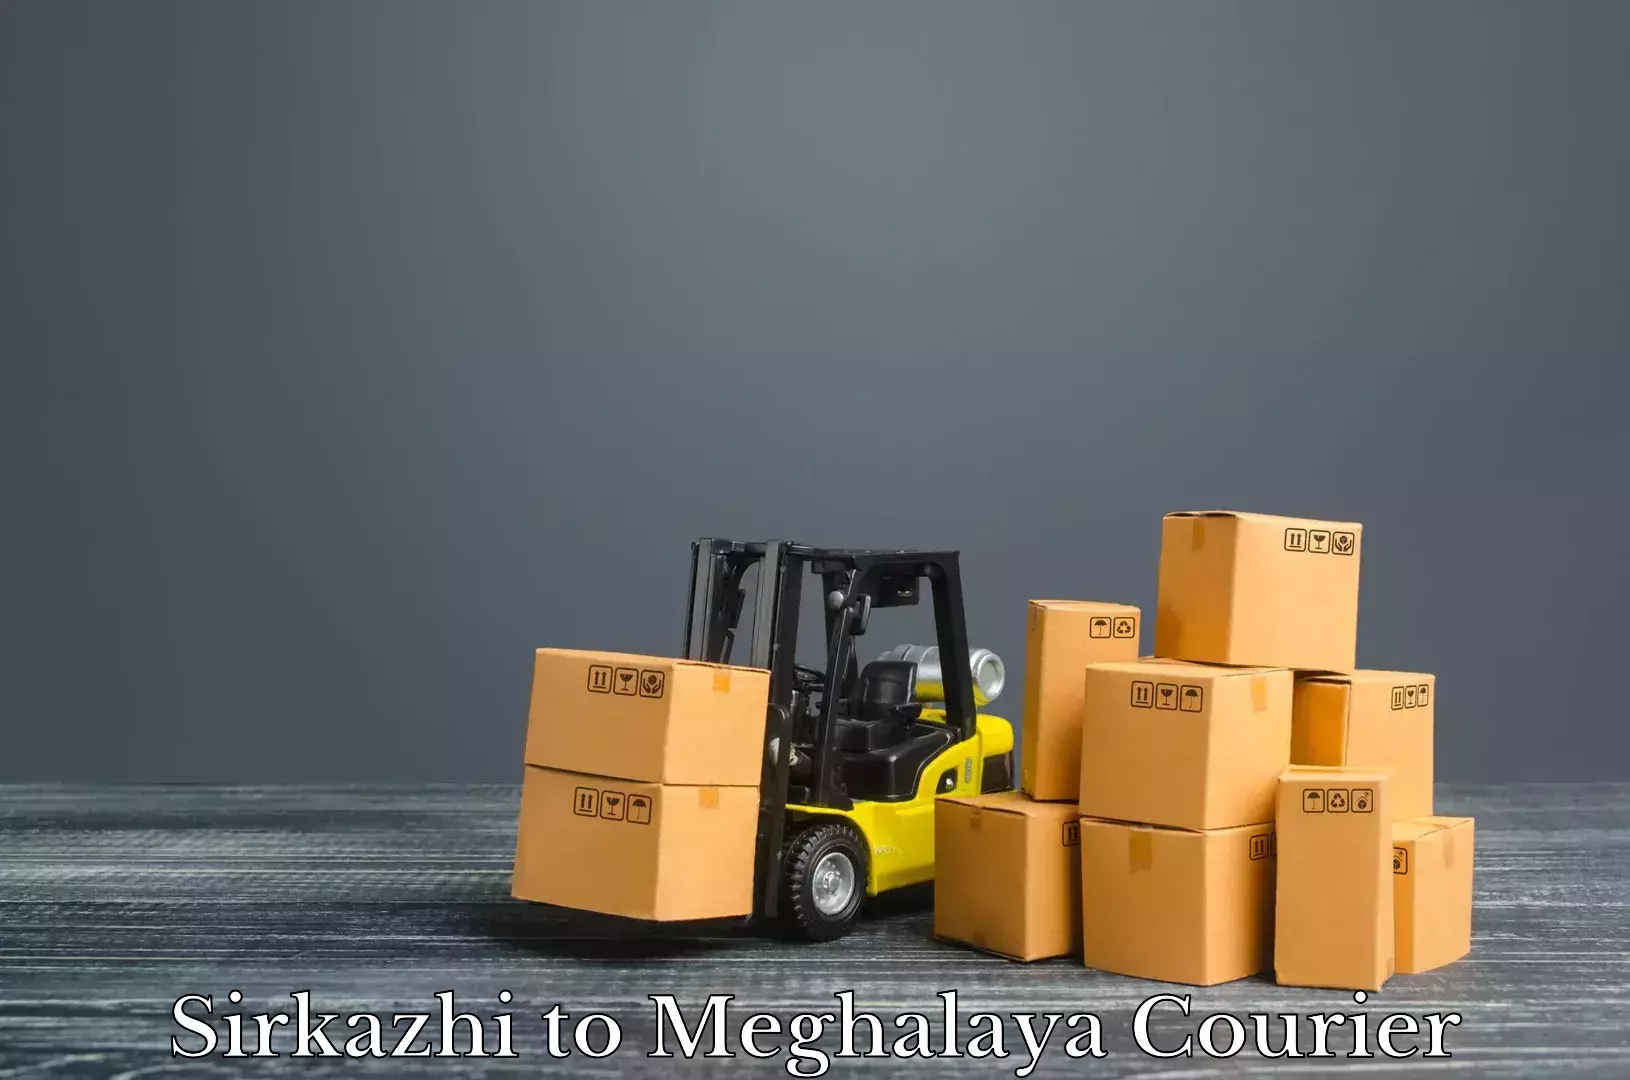 Baggage transport technology Sirkazhi to Meghalaya